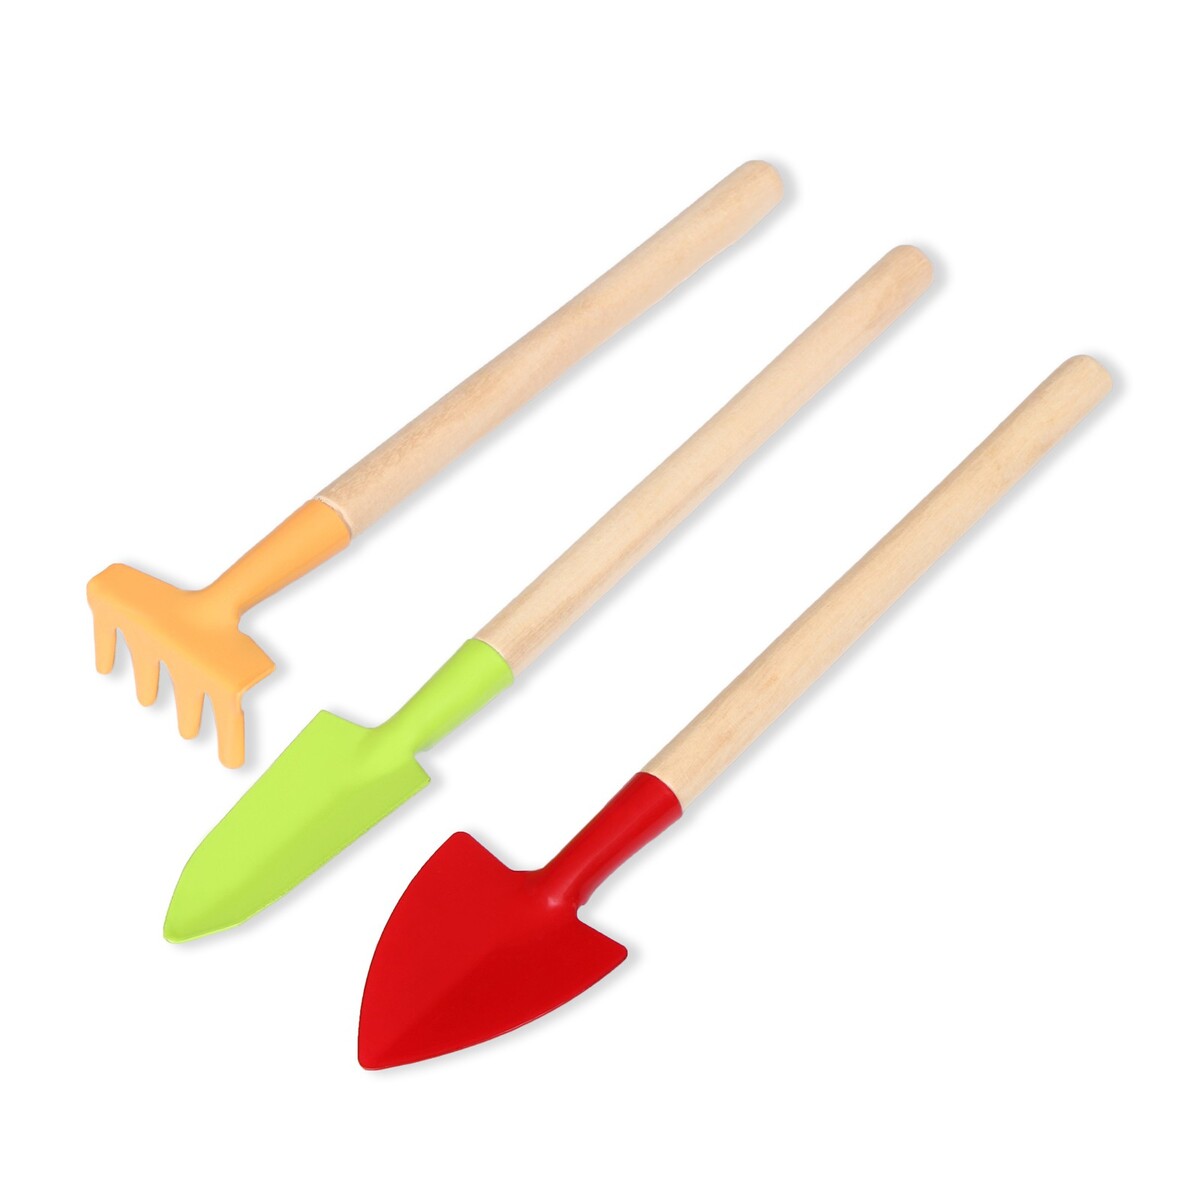 Набор садового инструмента, 3 предмета: рыхлитель, совок, грабли, длина 20 см, greengo набор совок и щётка с длинными ручками paul masquin